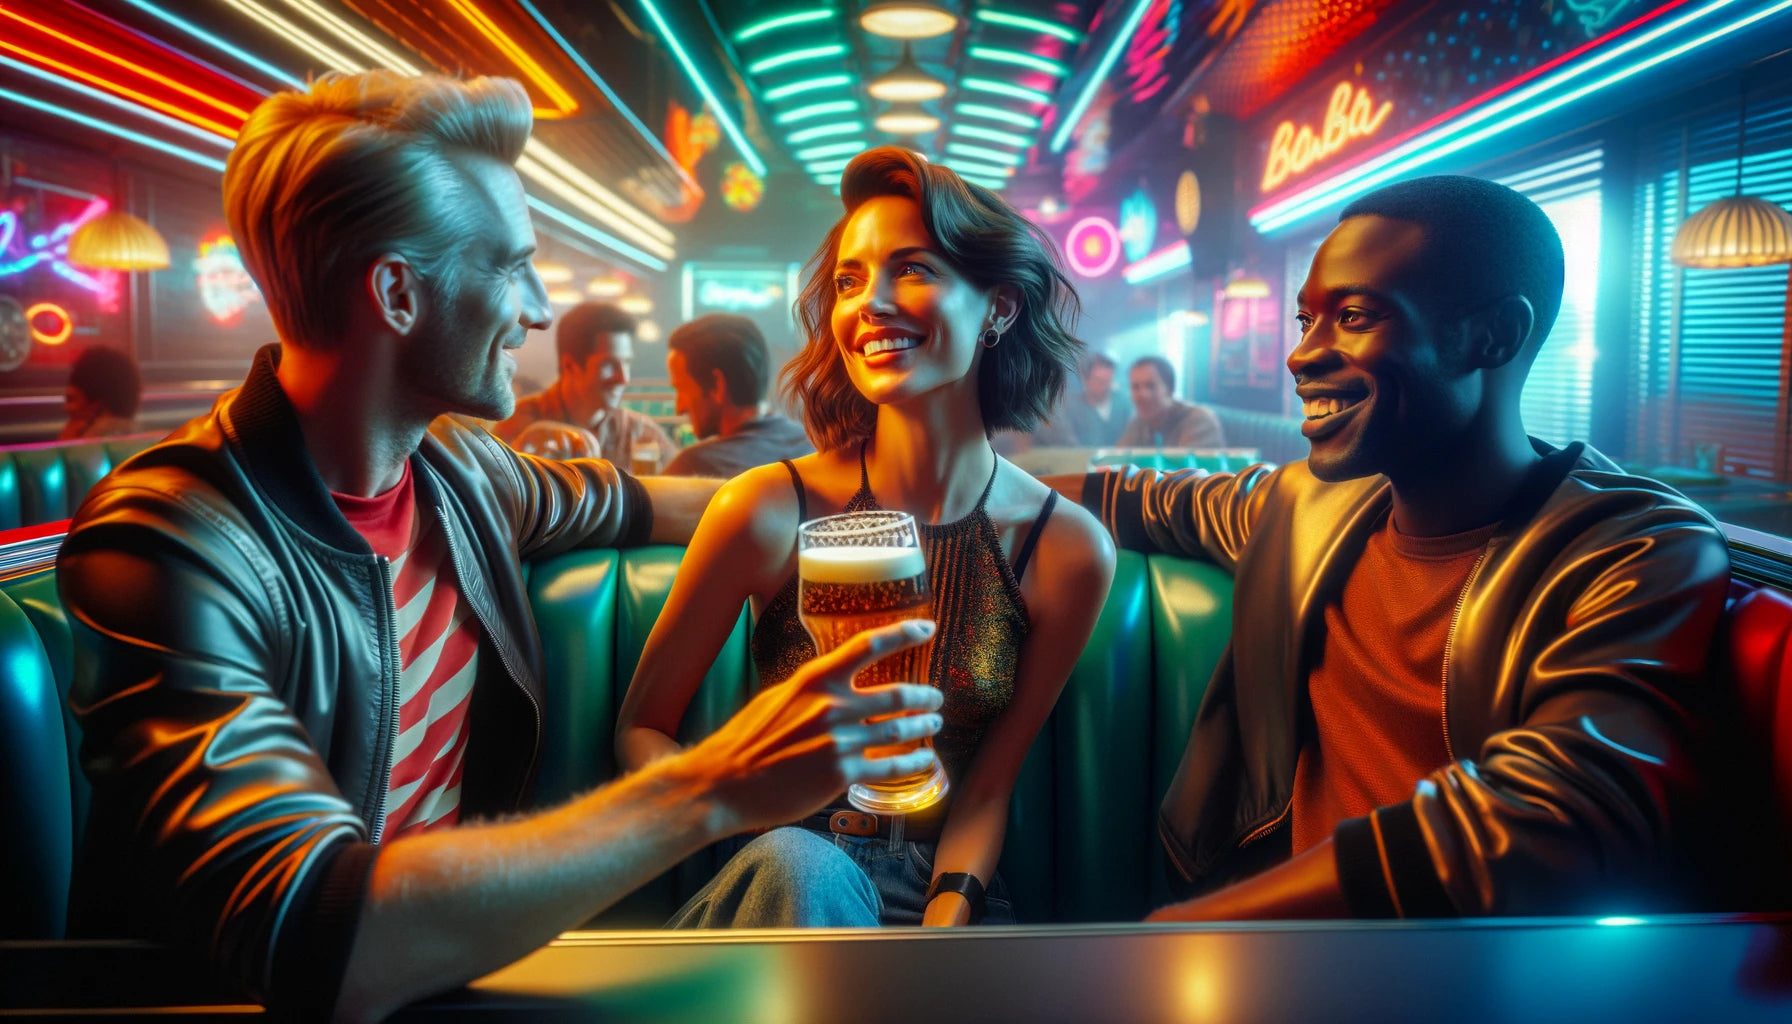 conto erótico - sexo a três no bar. arte IA de três pessoas sentadas em uma mesa de bar.